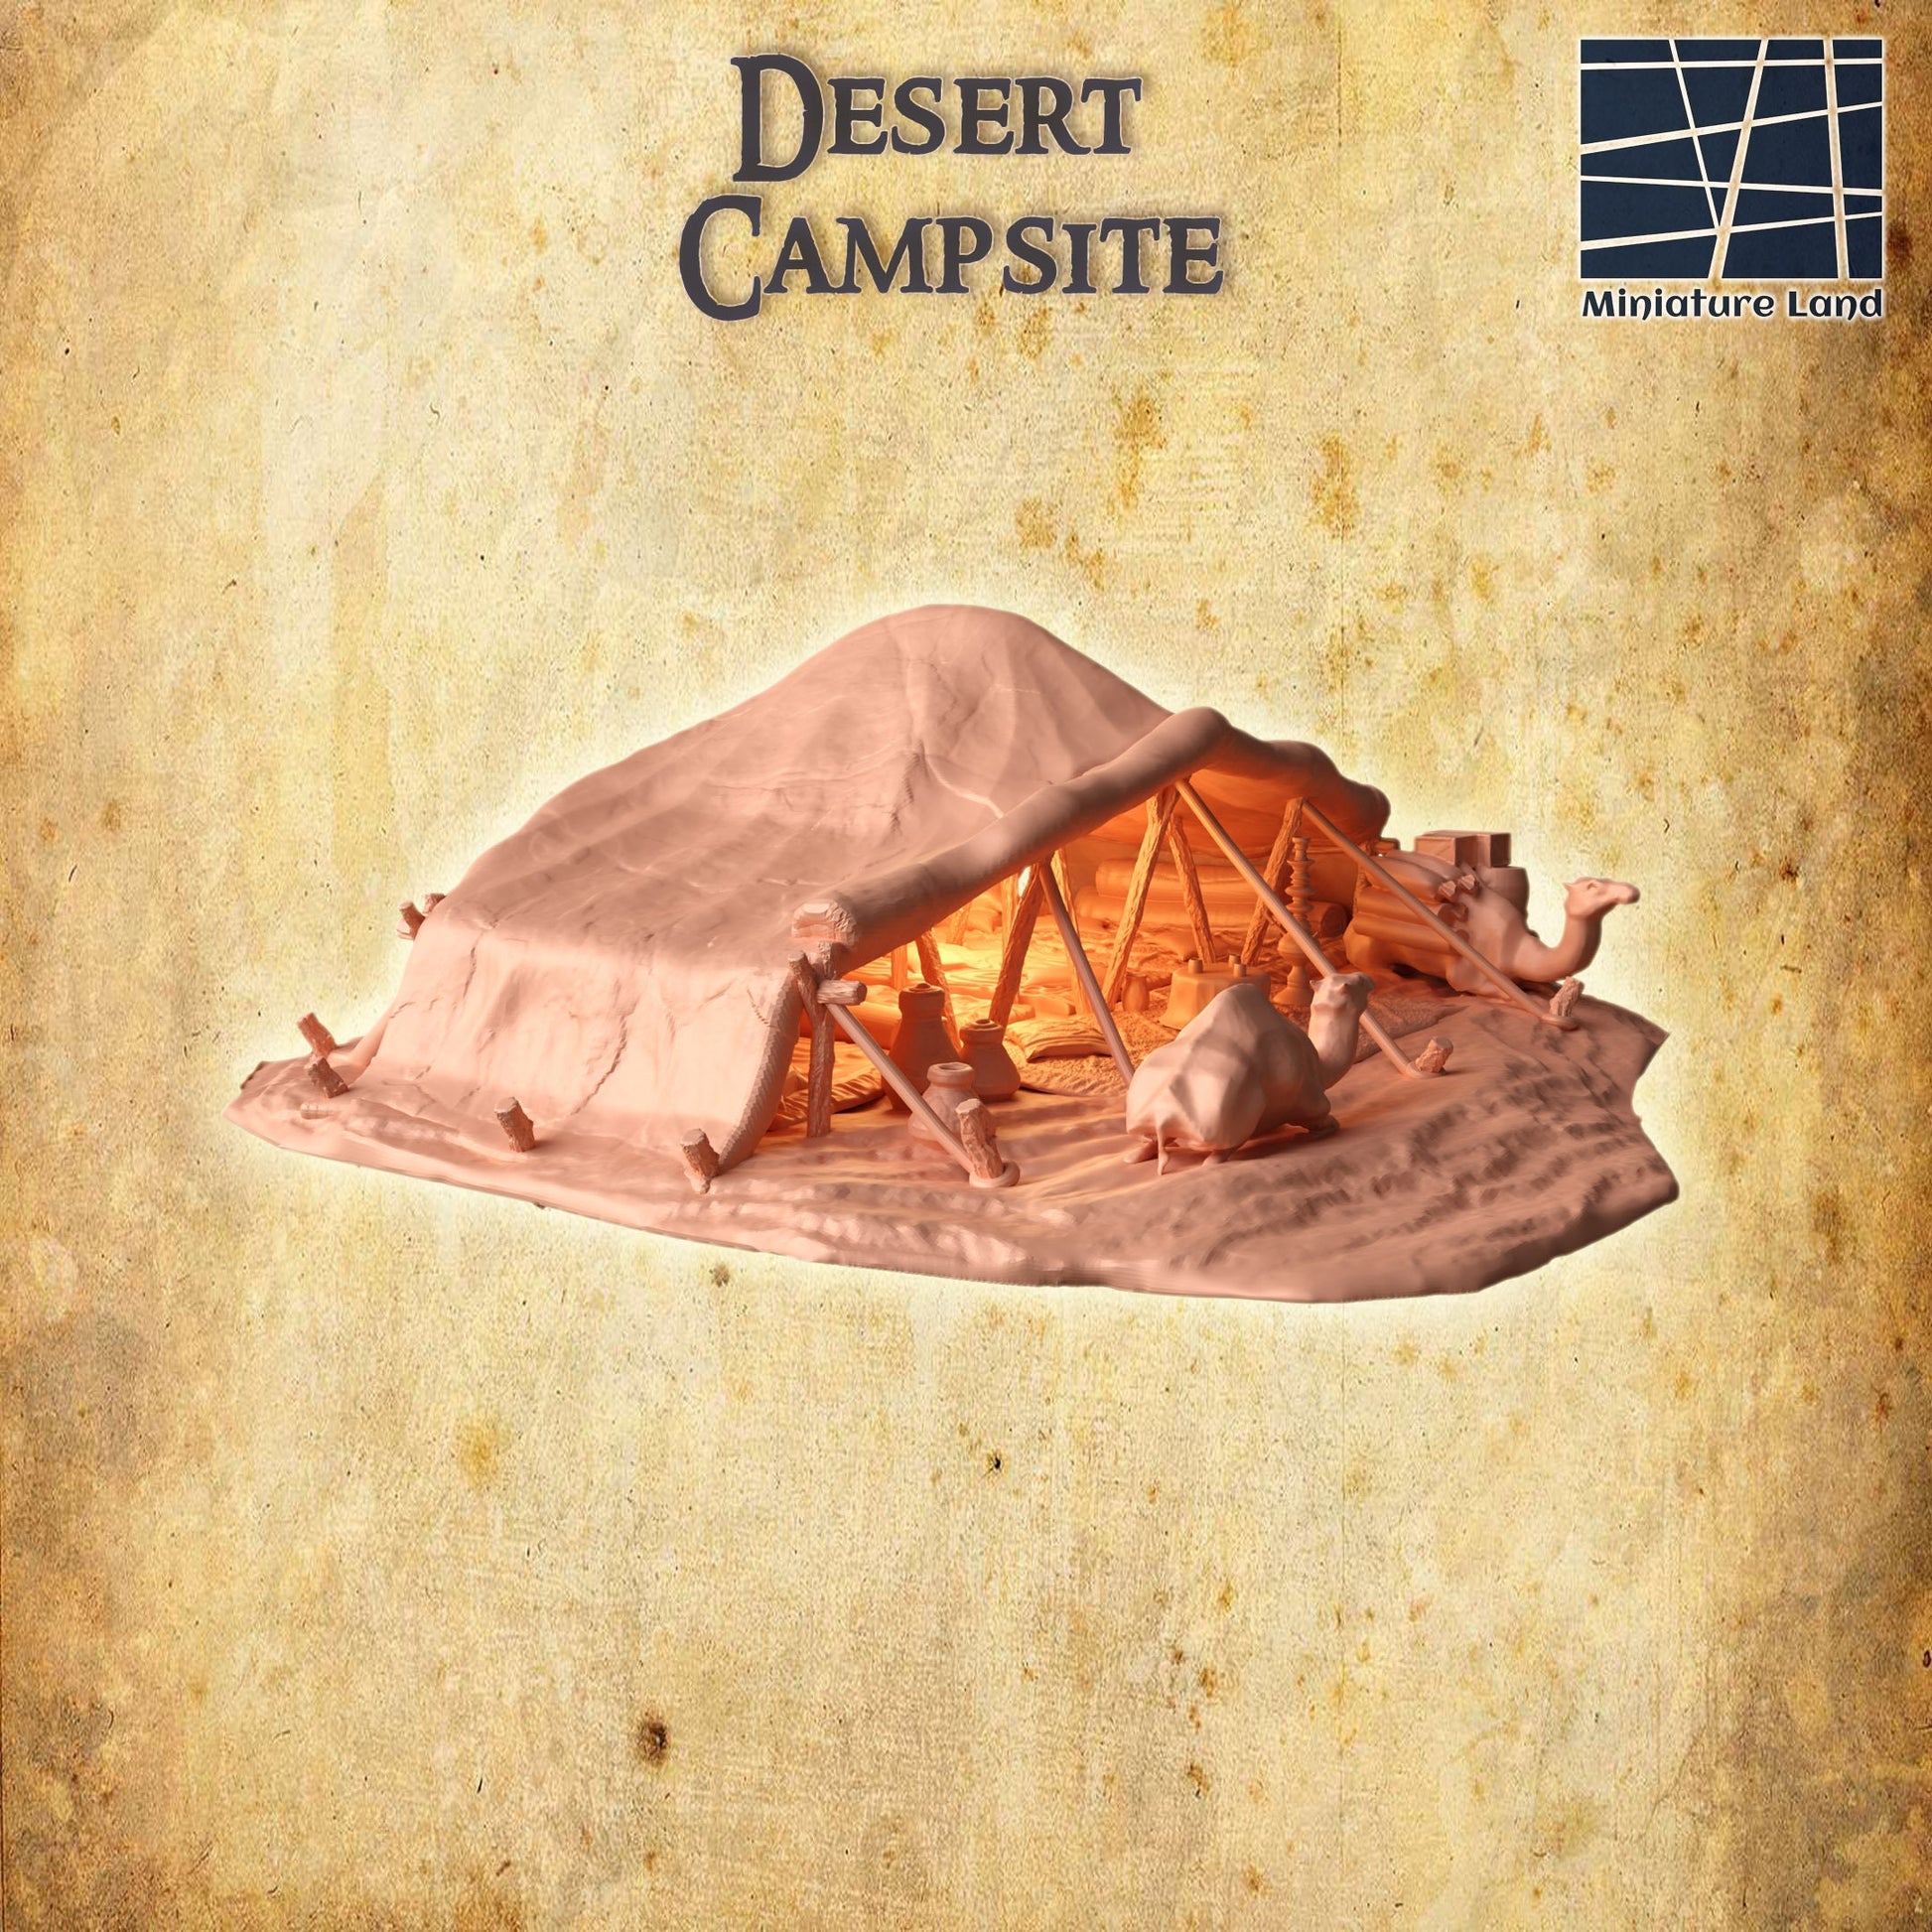 Desert Campsite, DesertCamp, Camping, Desert Oasis